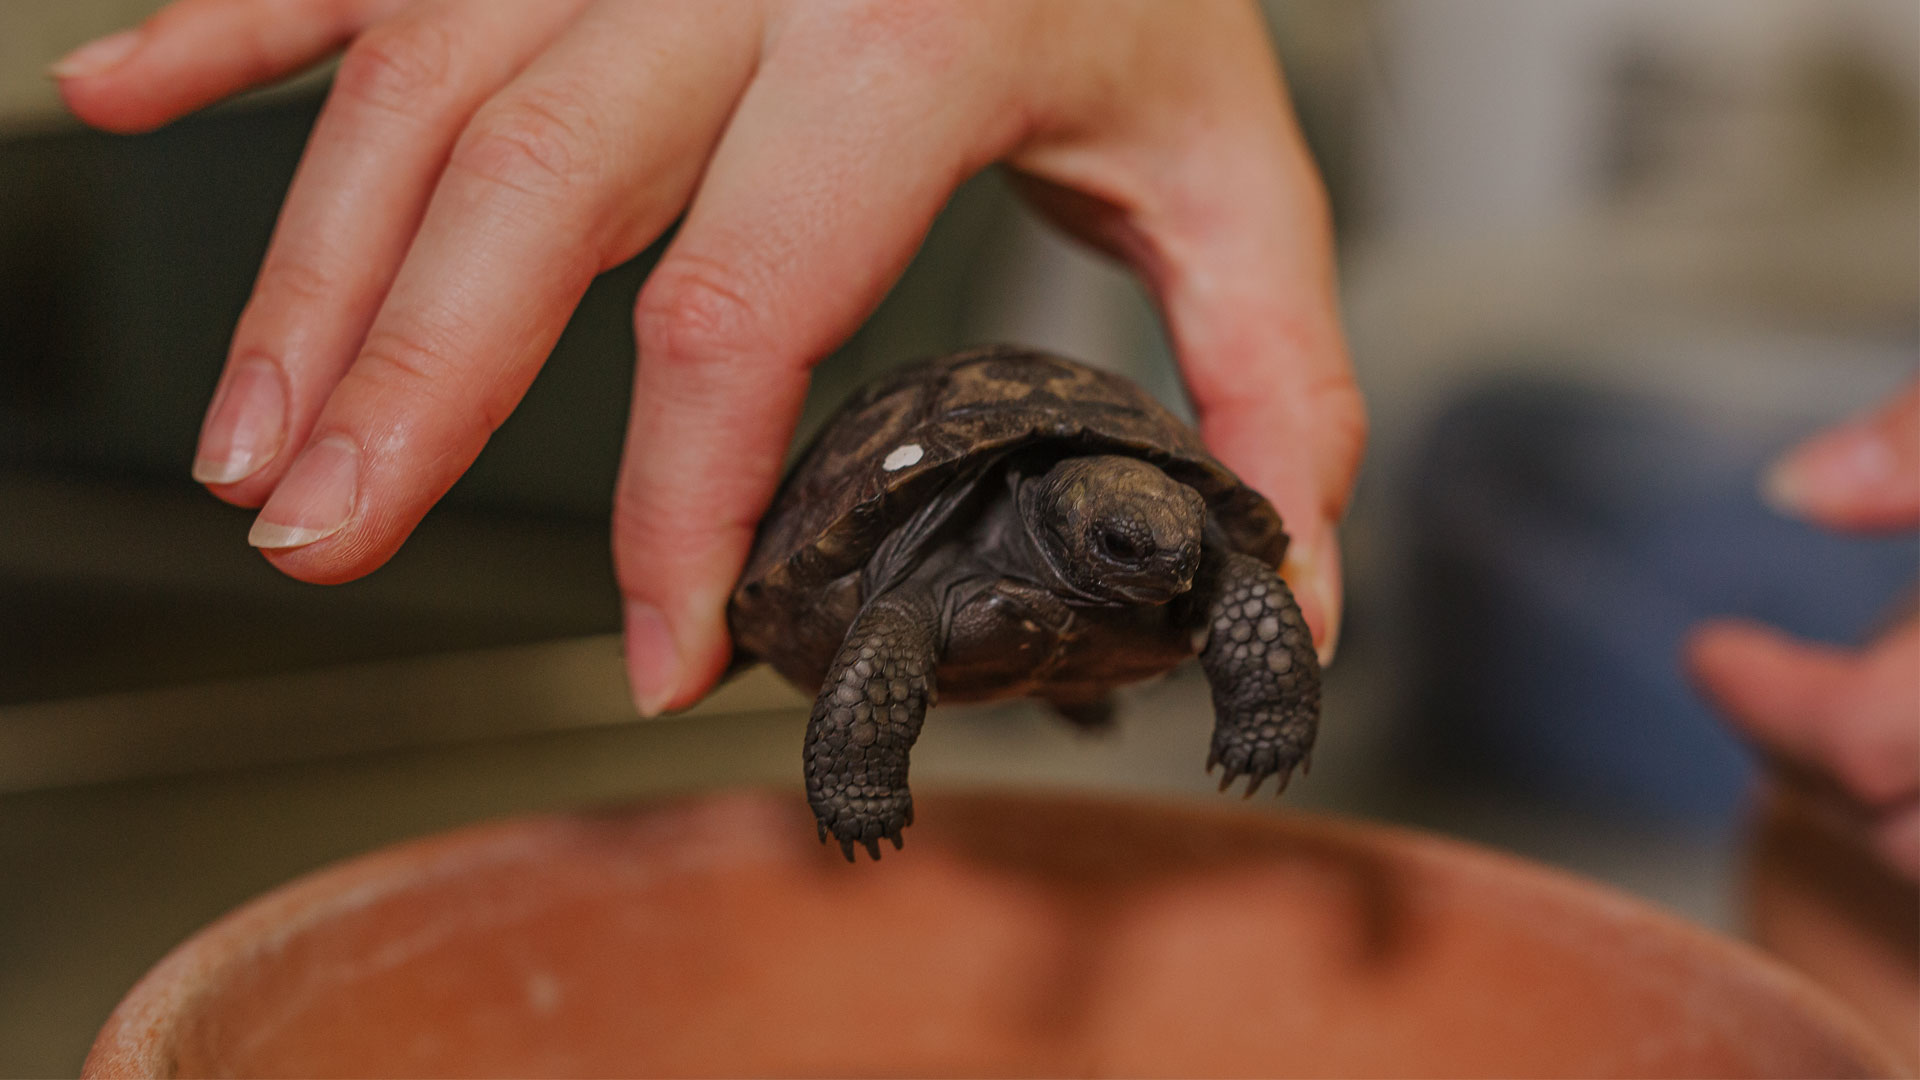 https://rfacdn.nz/zoo/assets/media/galapagos-tortoise-hatchlings-gallery-3.jpg